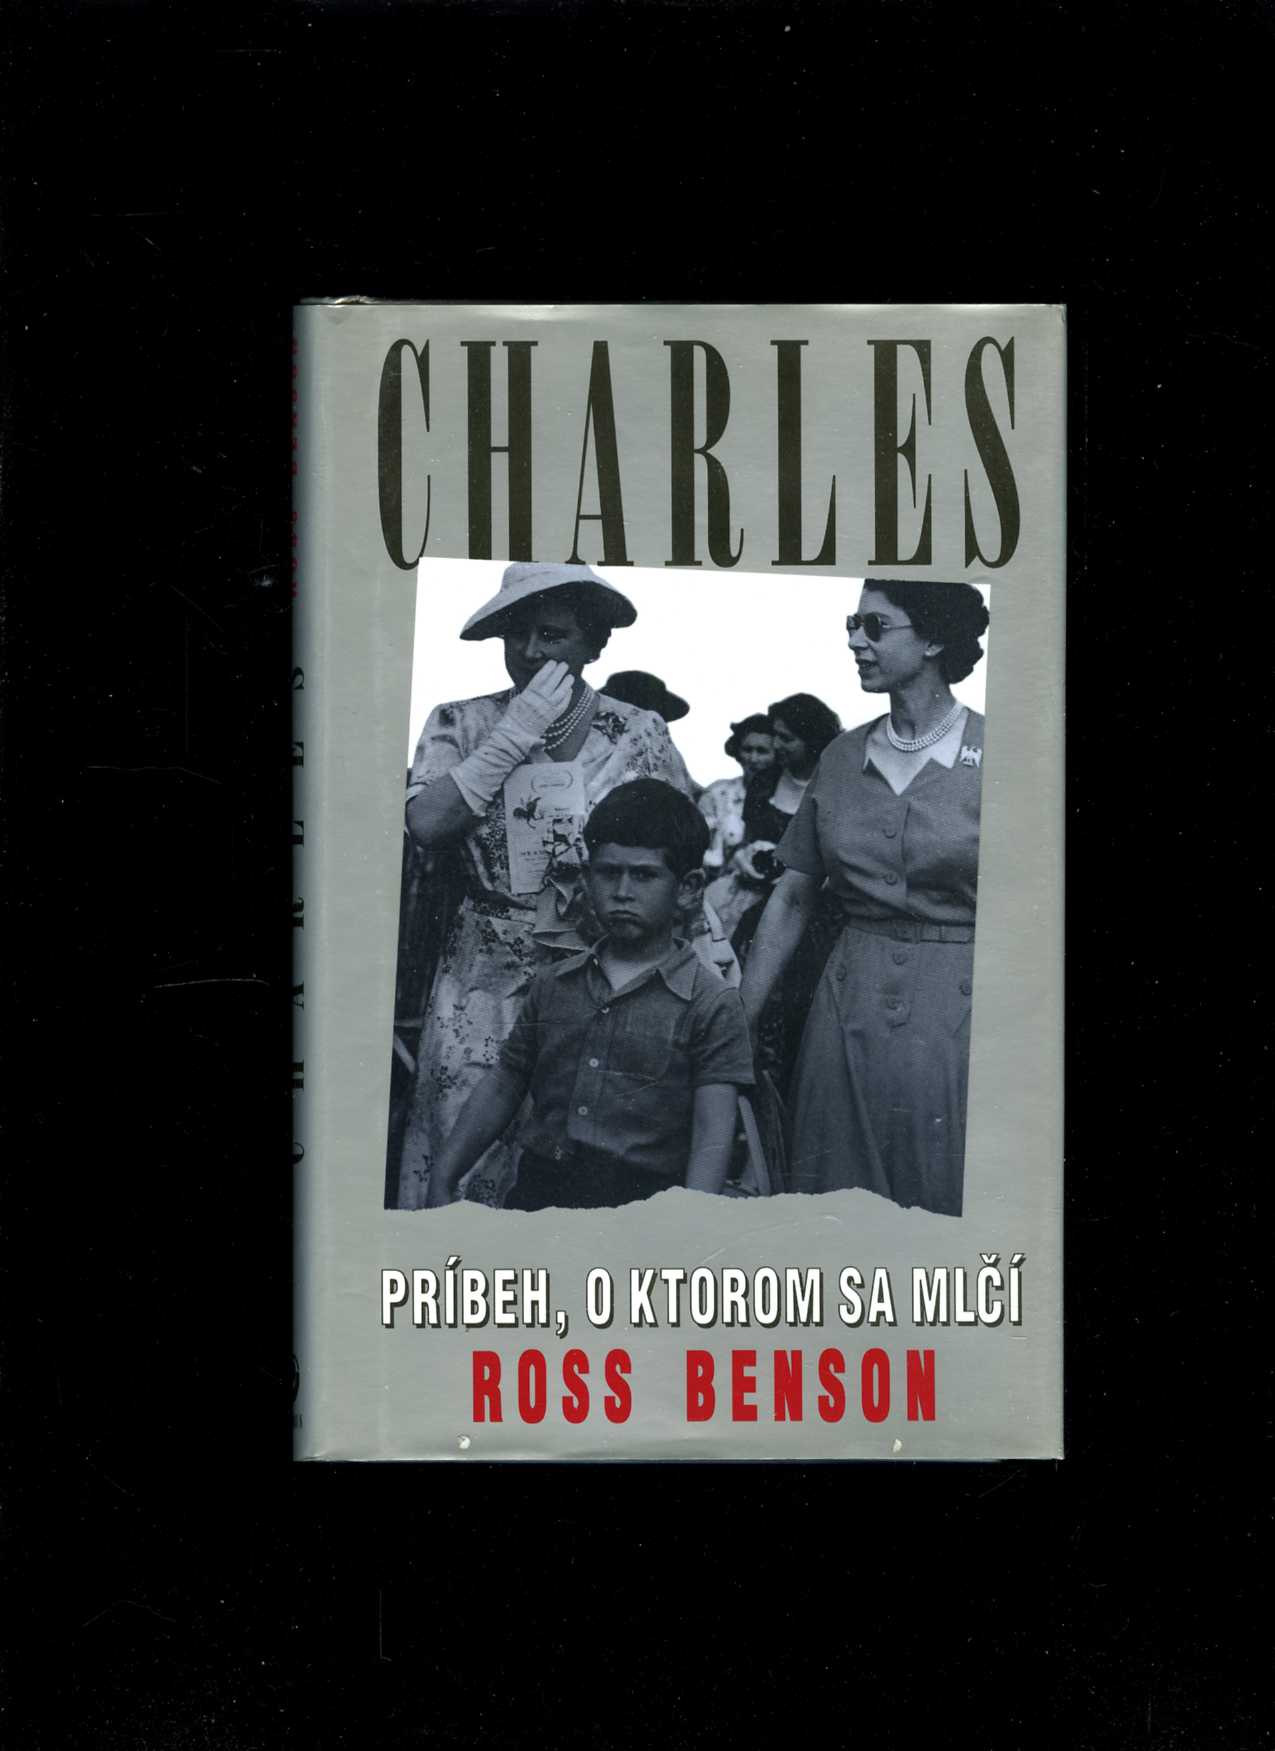 Charles - príbeh, o ktorom sa mlčí (Ross Benson)